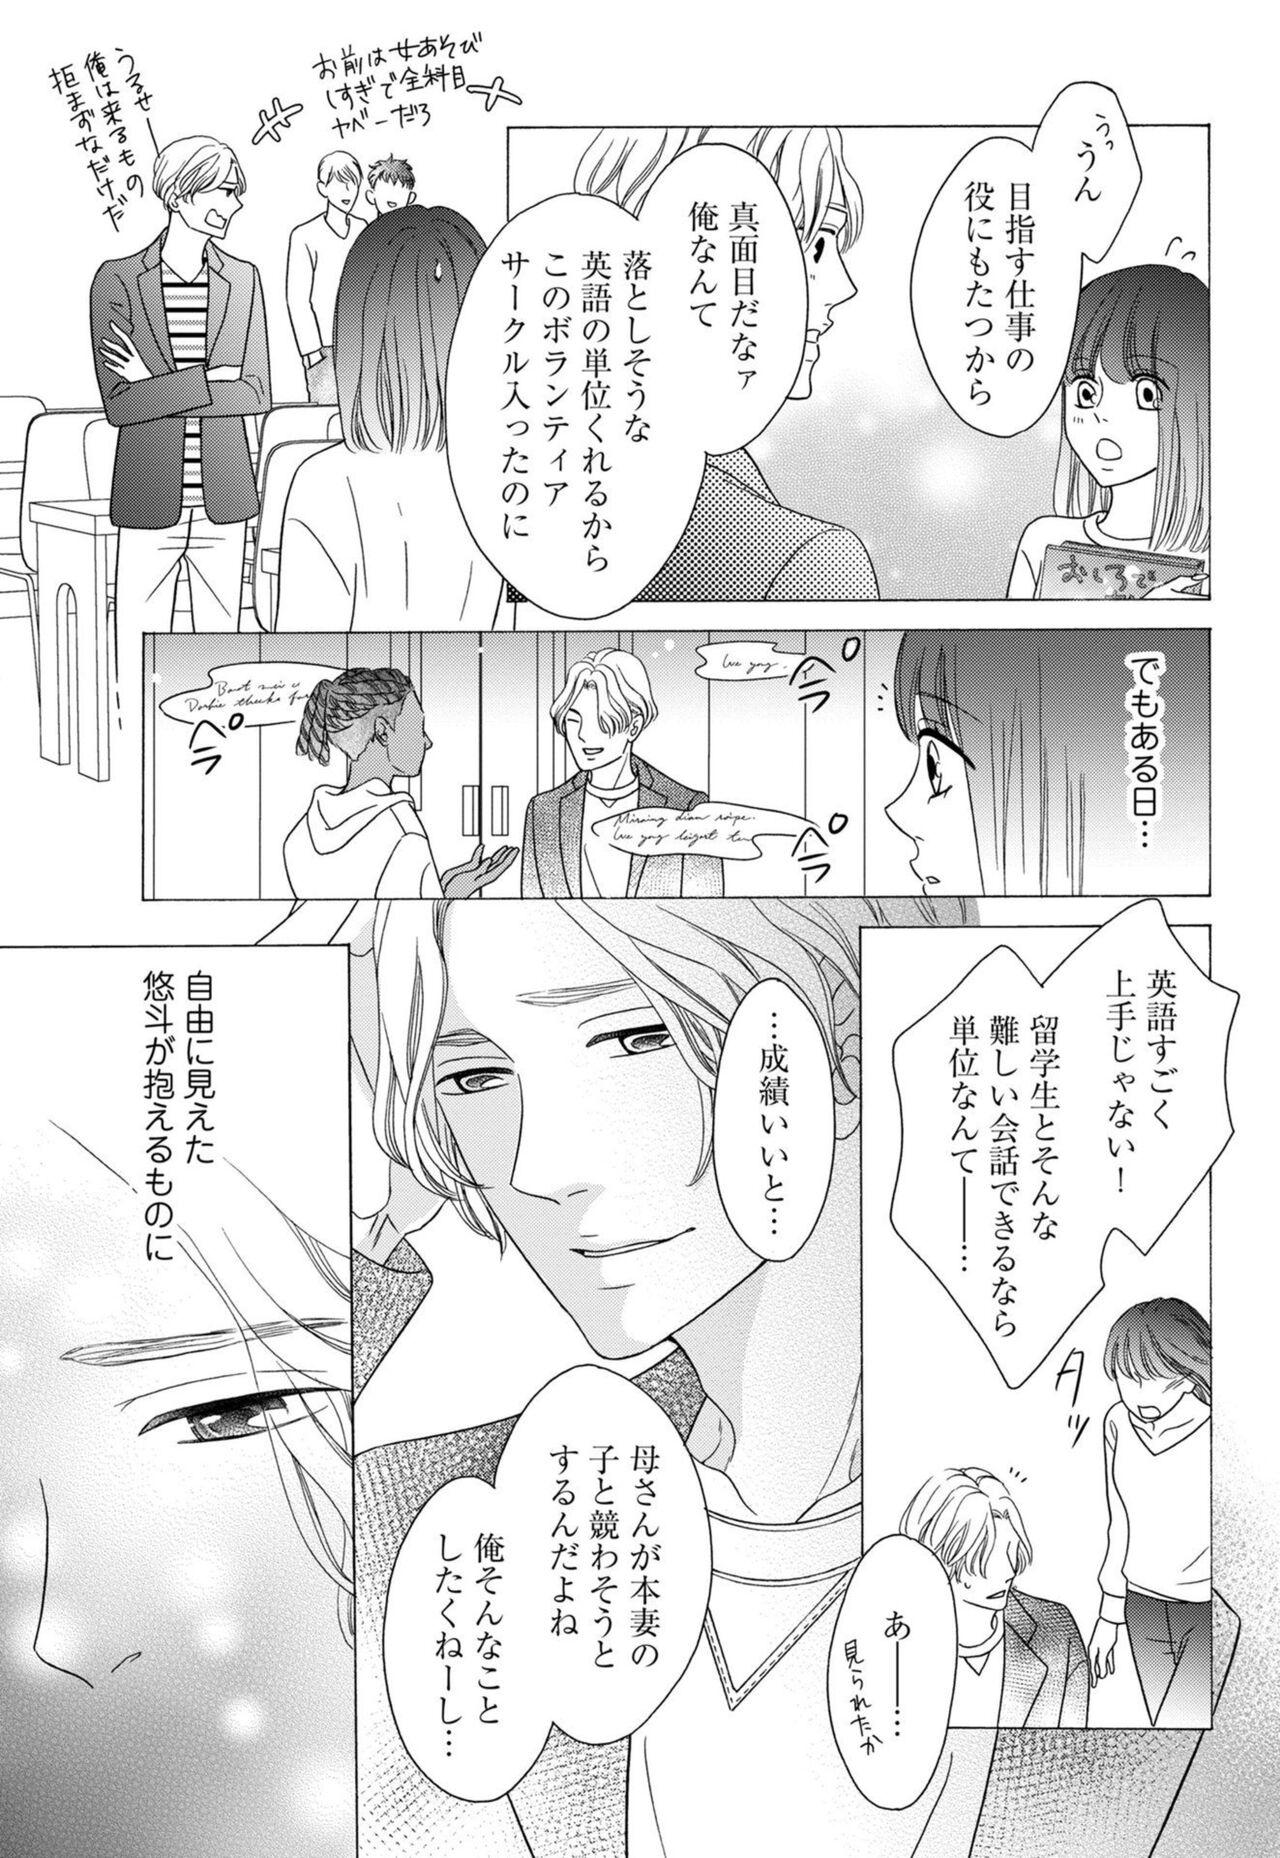 Oral Sex `Netotte Yaru yo' Moto Kare Kara 8 Toshikoshi no Shūchaku ai 1 Livecams - Page 11